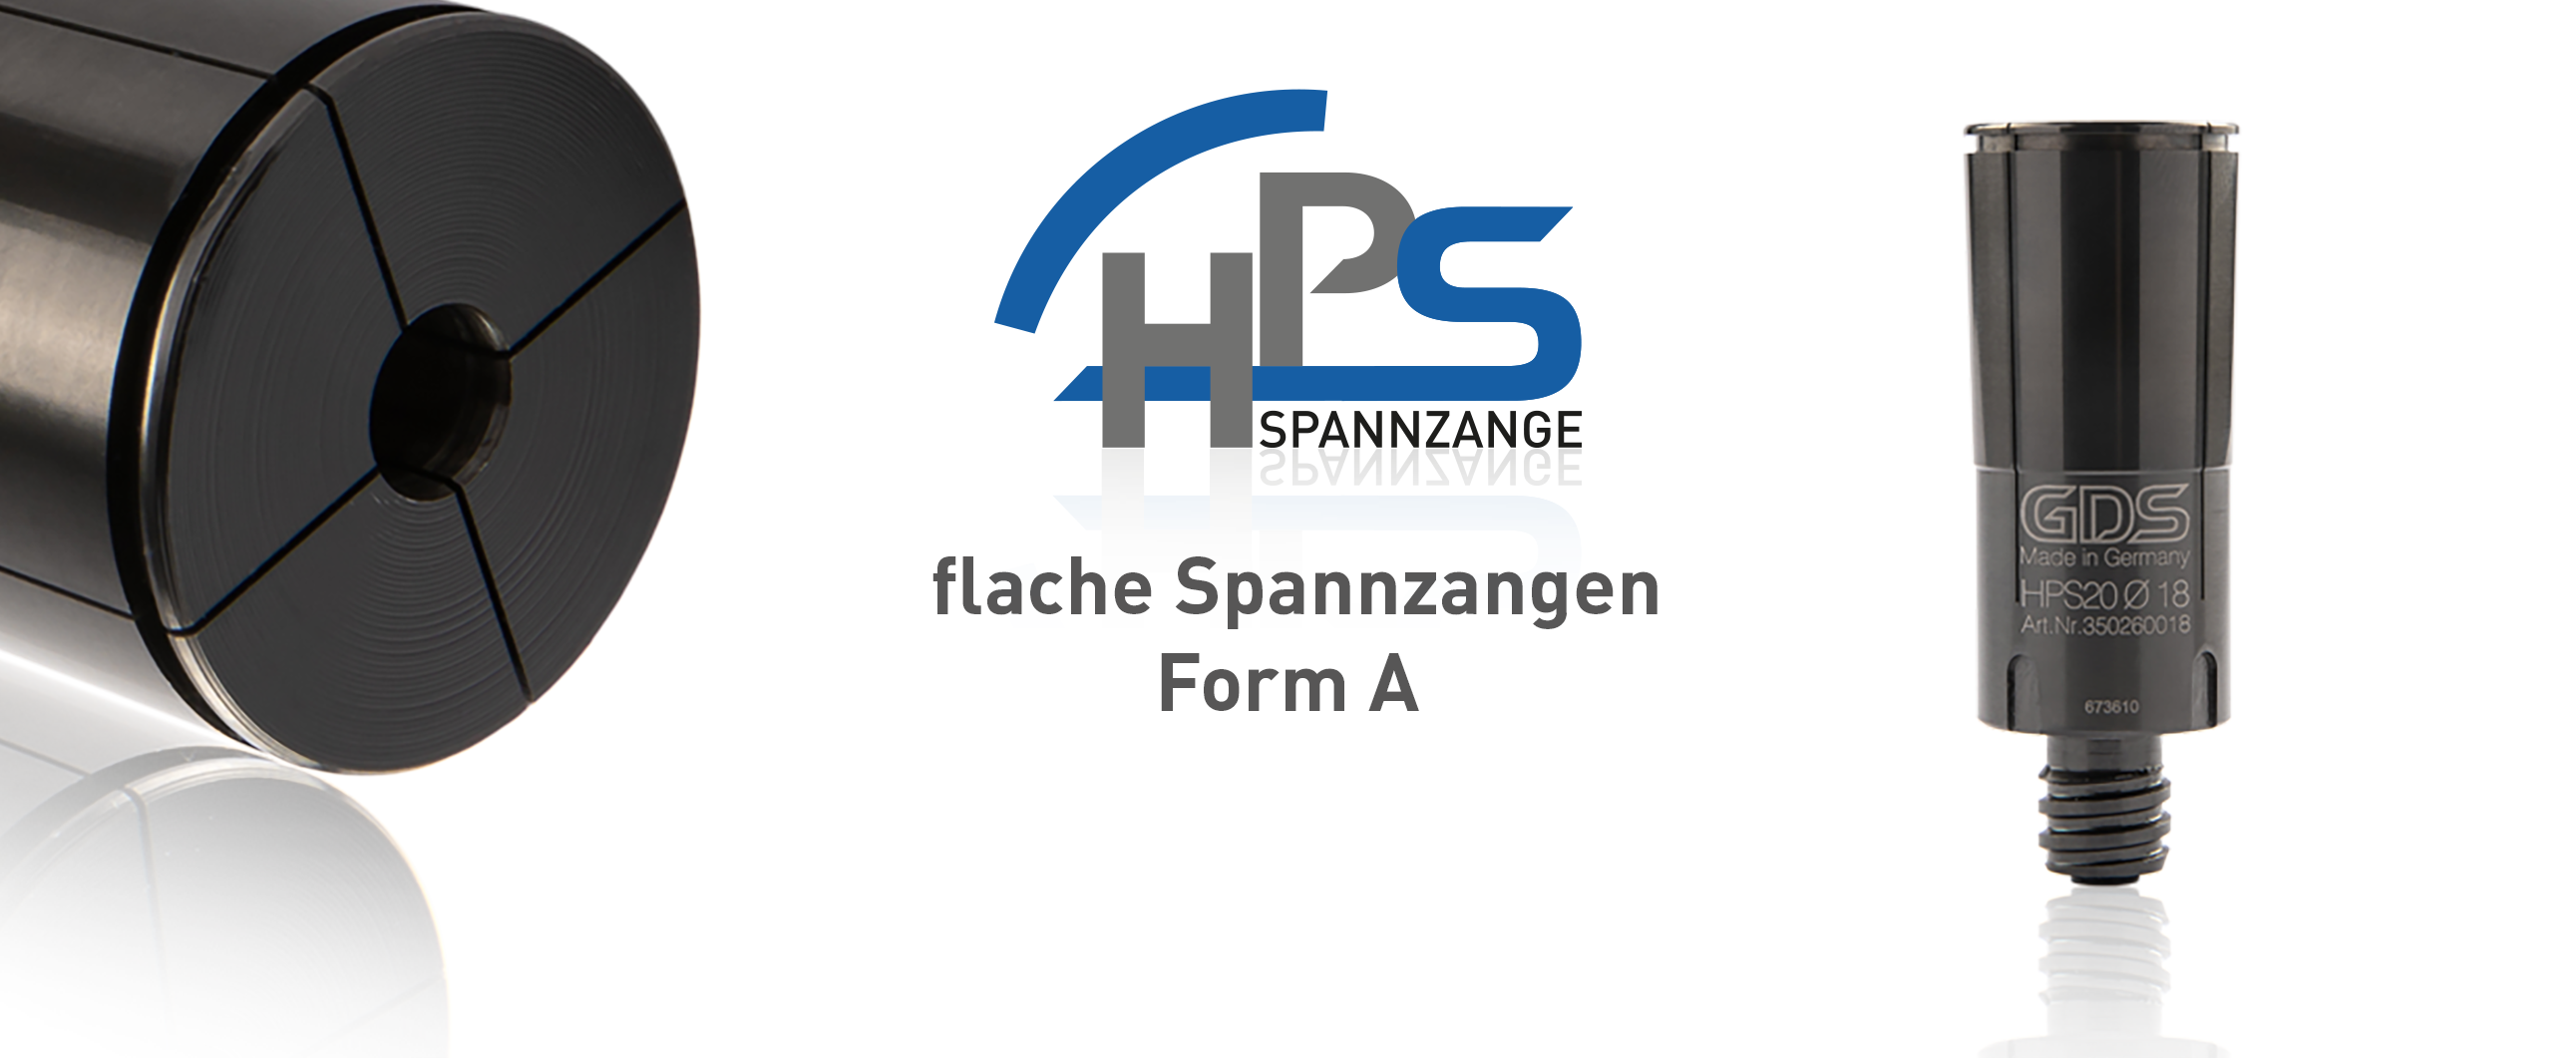 flache HPS Spannzangen Form A